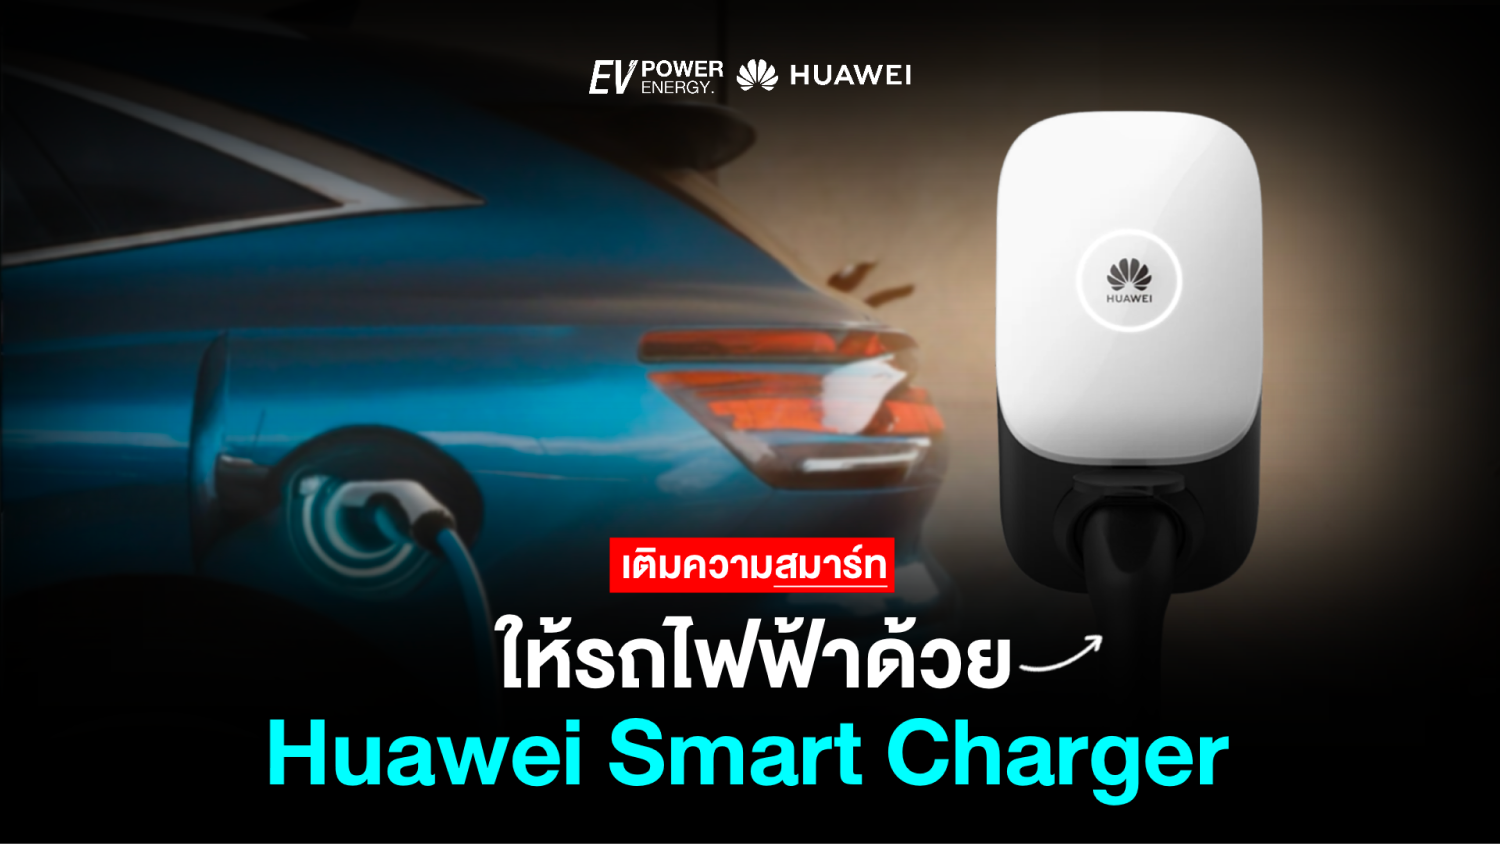 เติมความสมาร์ทให้รถไฟฟ้า ด้วย Huawei Smart Charger